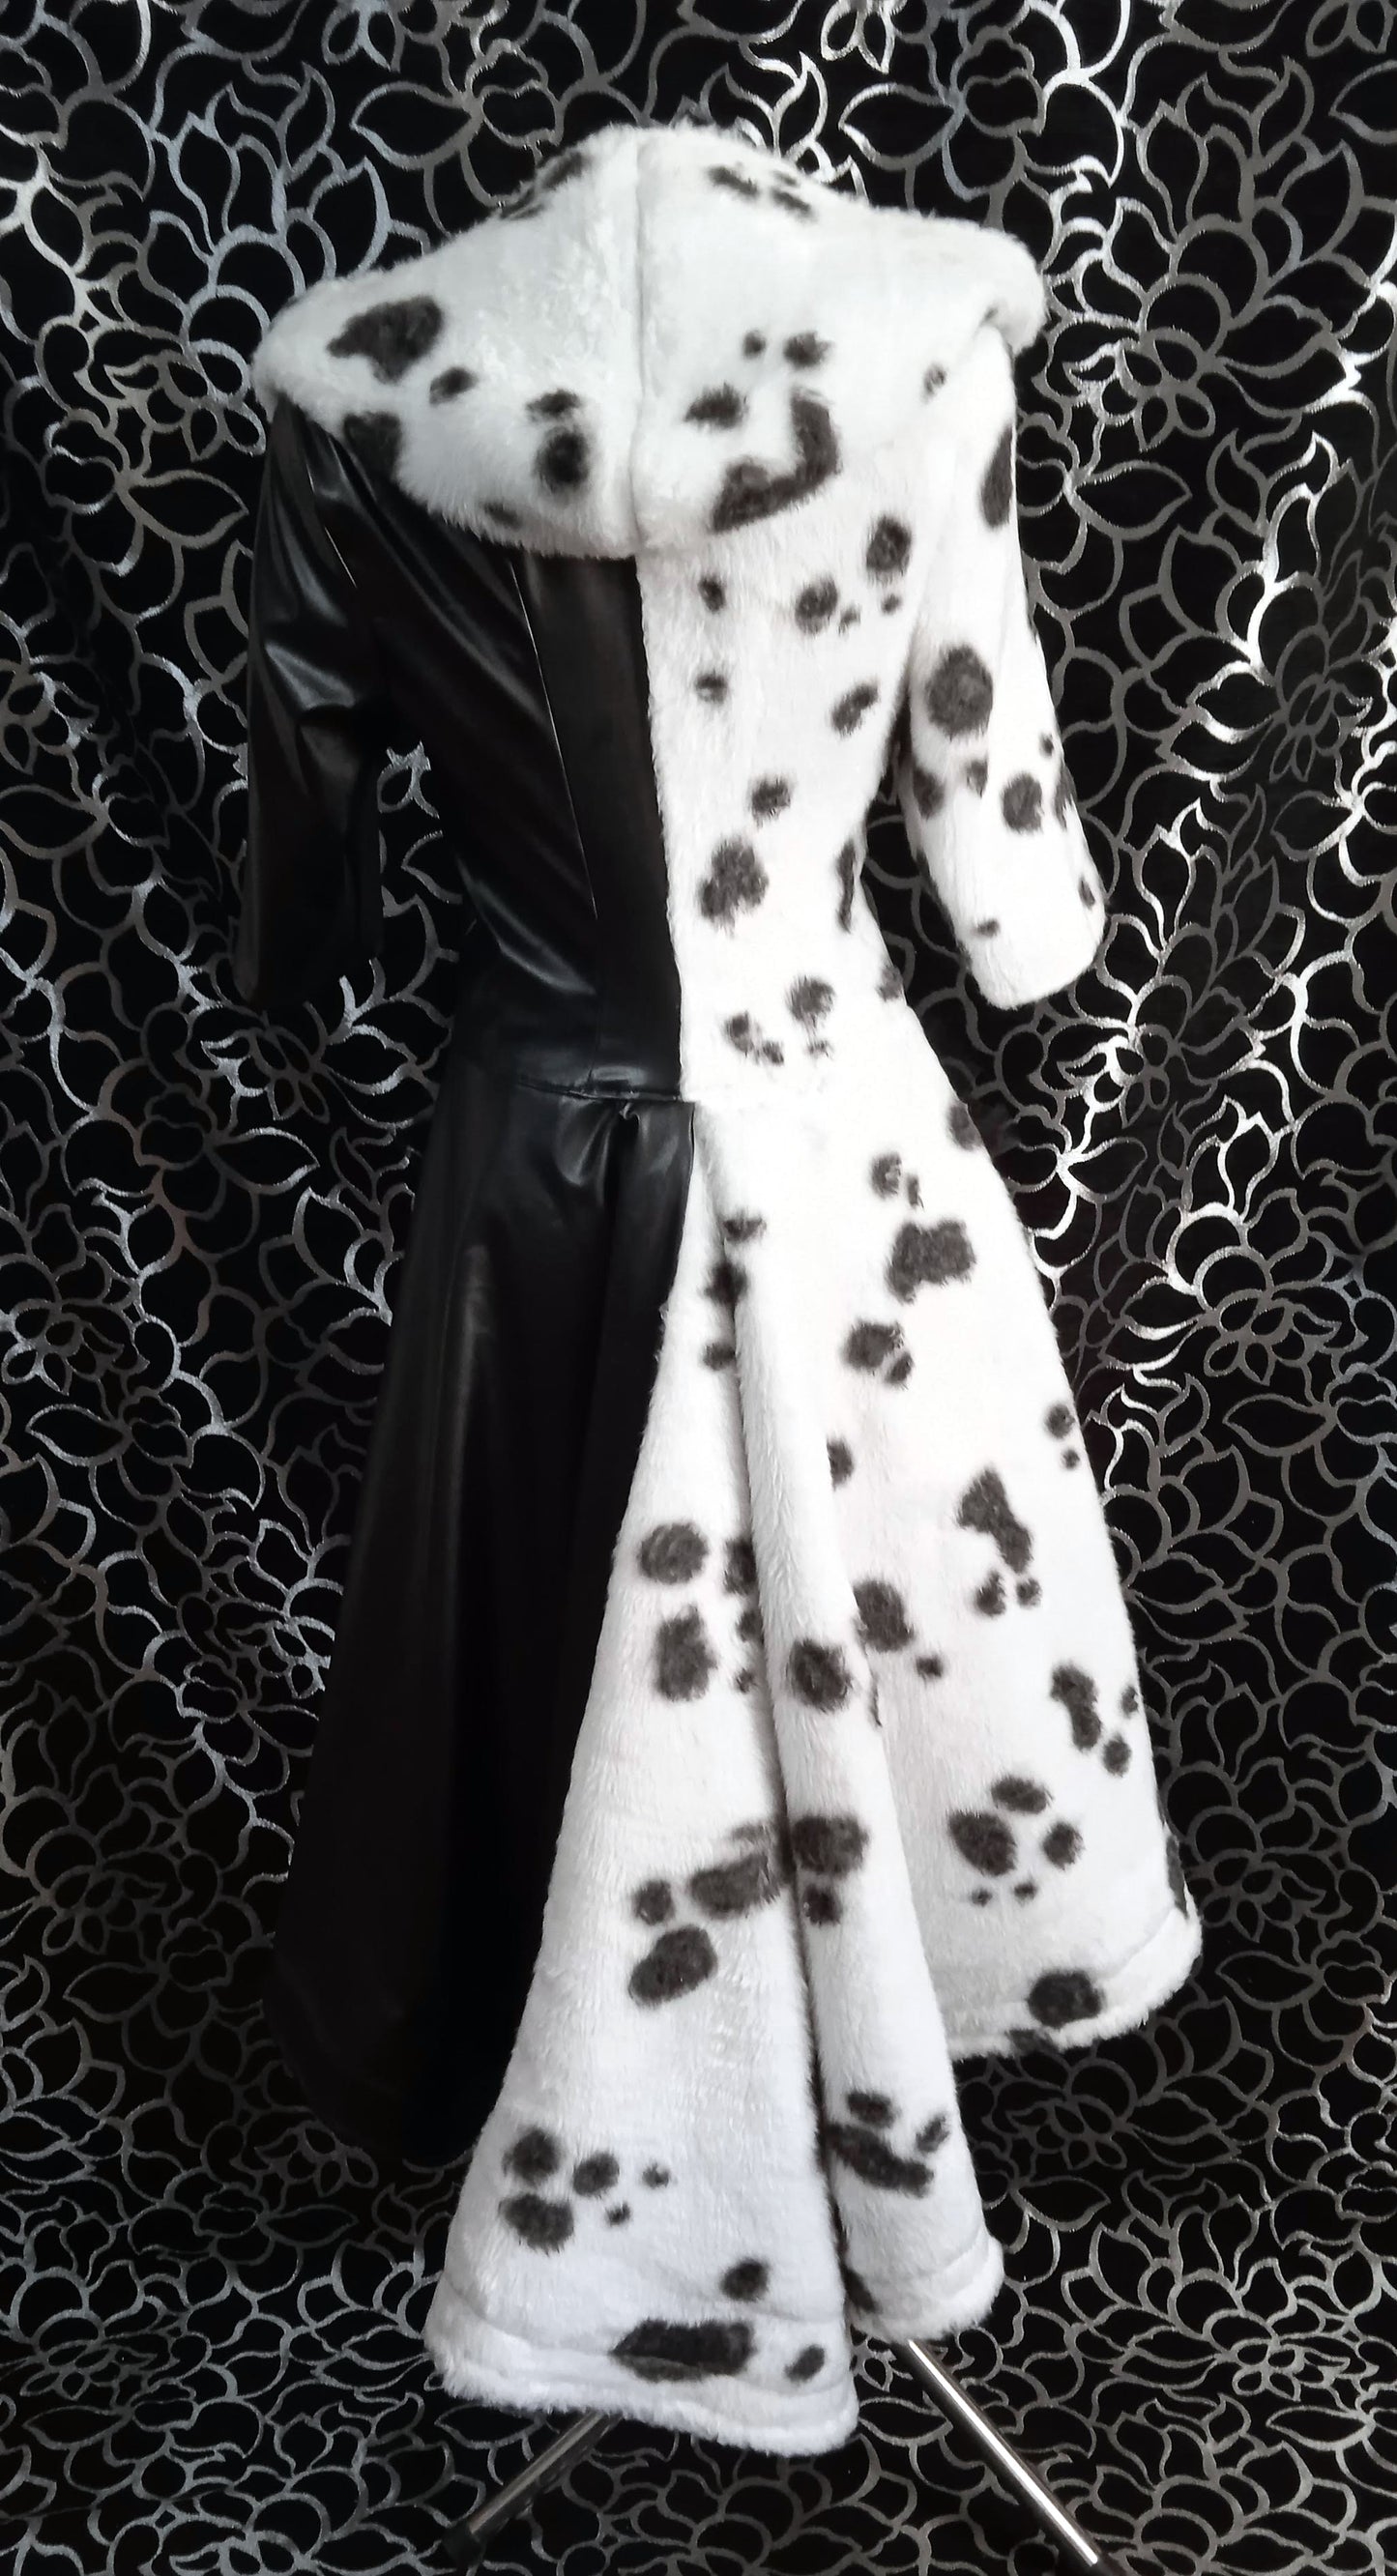 Cruella dalmatian outfit